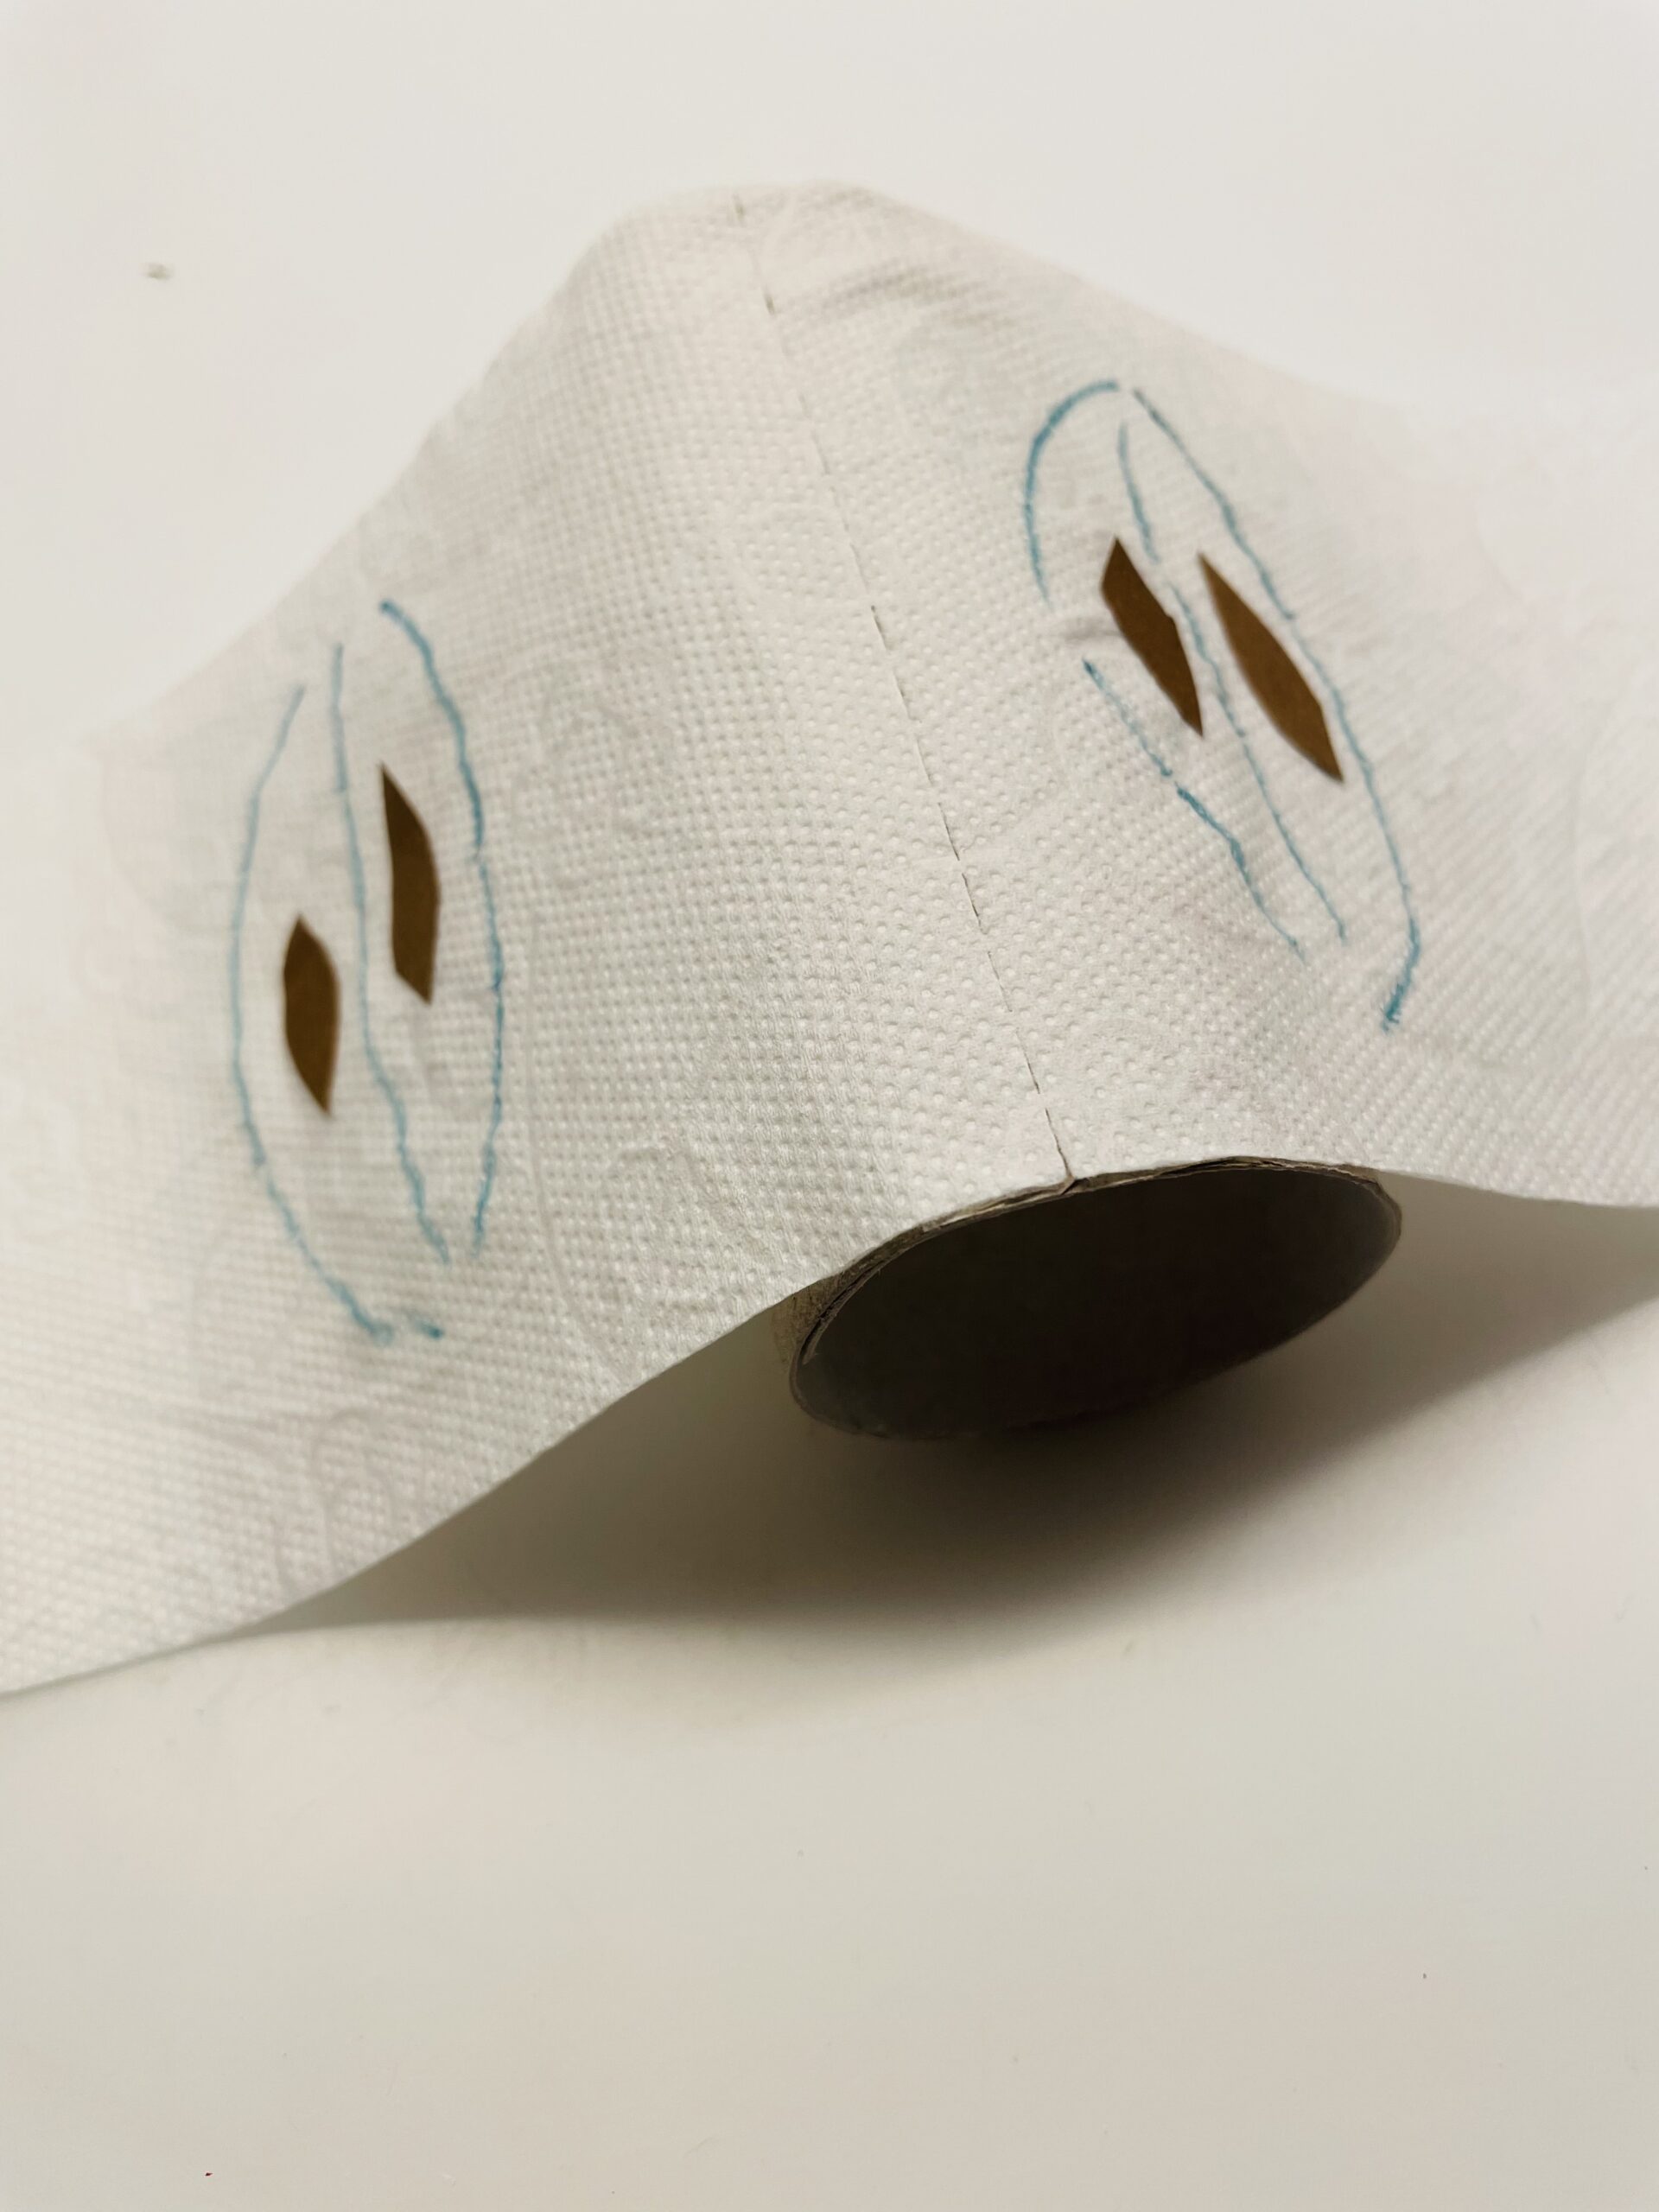 Bild zum Schritt 6 für das Bastel- und DIY-Abenteuer für Kinder: 'Legt das Toilettenpapier über die Papprolle und drückt das Papier...'